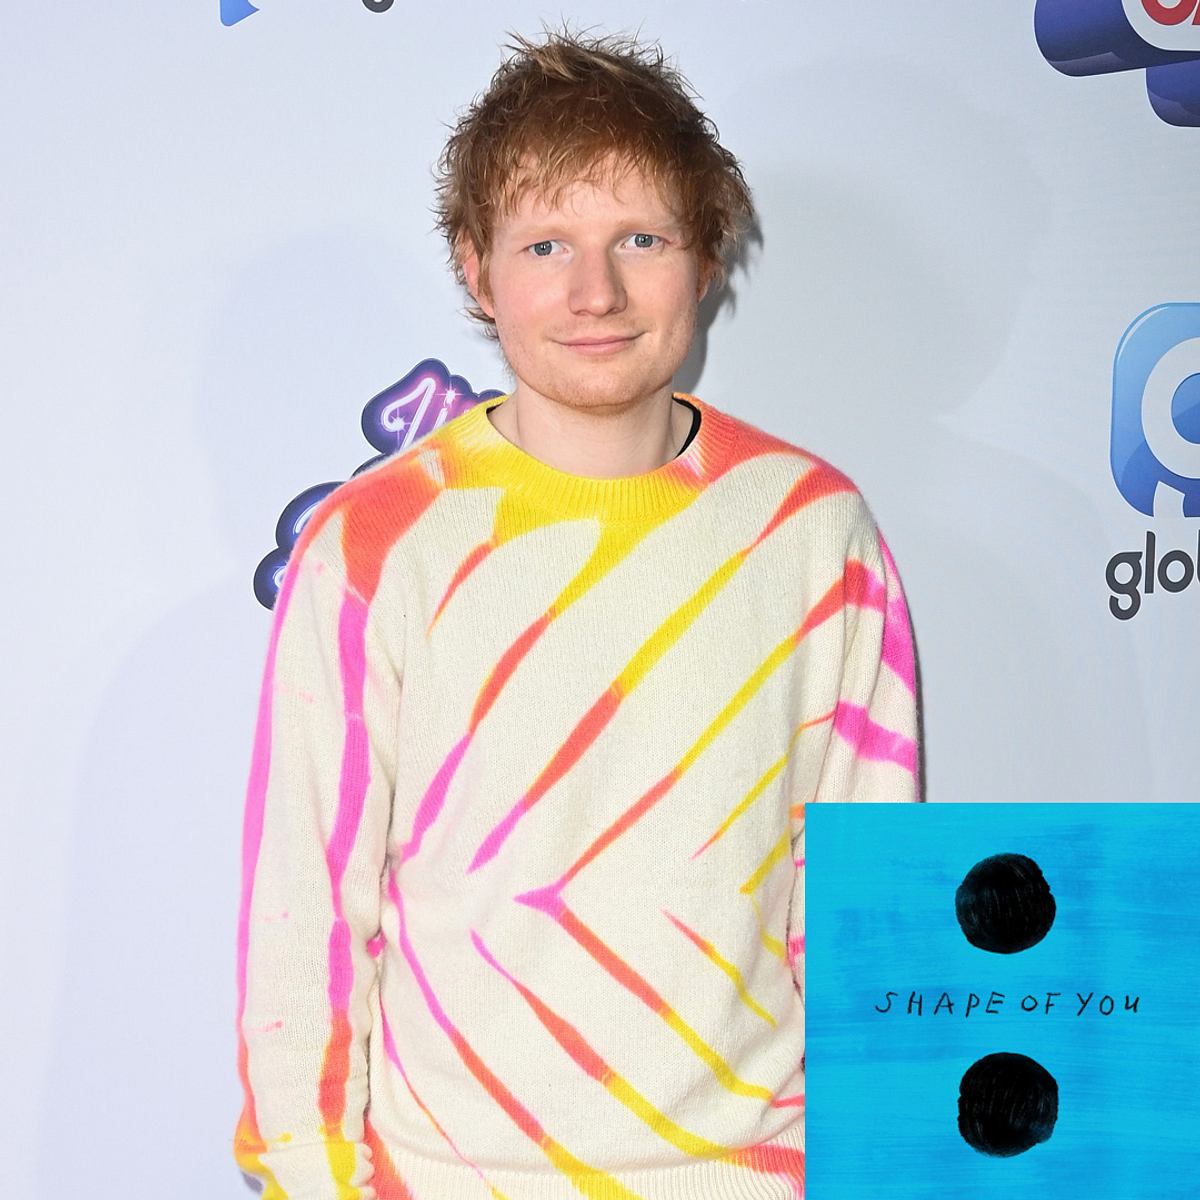 Stars, die ihre Songs hassen: Ed Sheeran – Shape of You